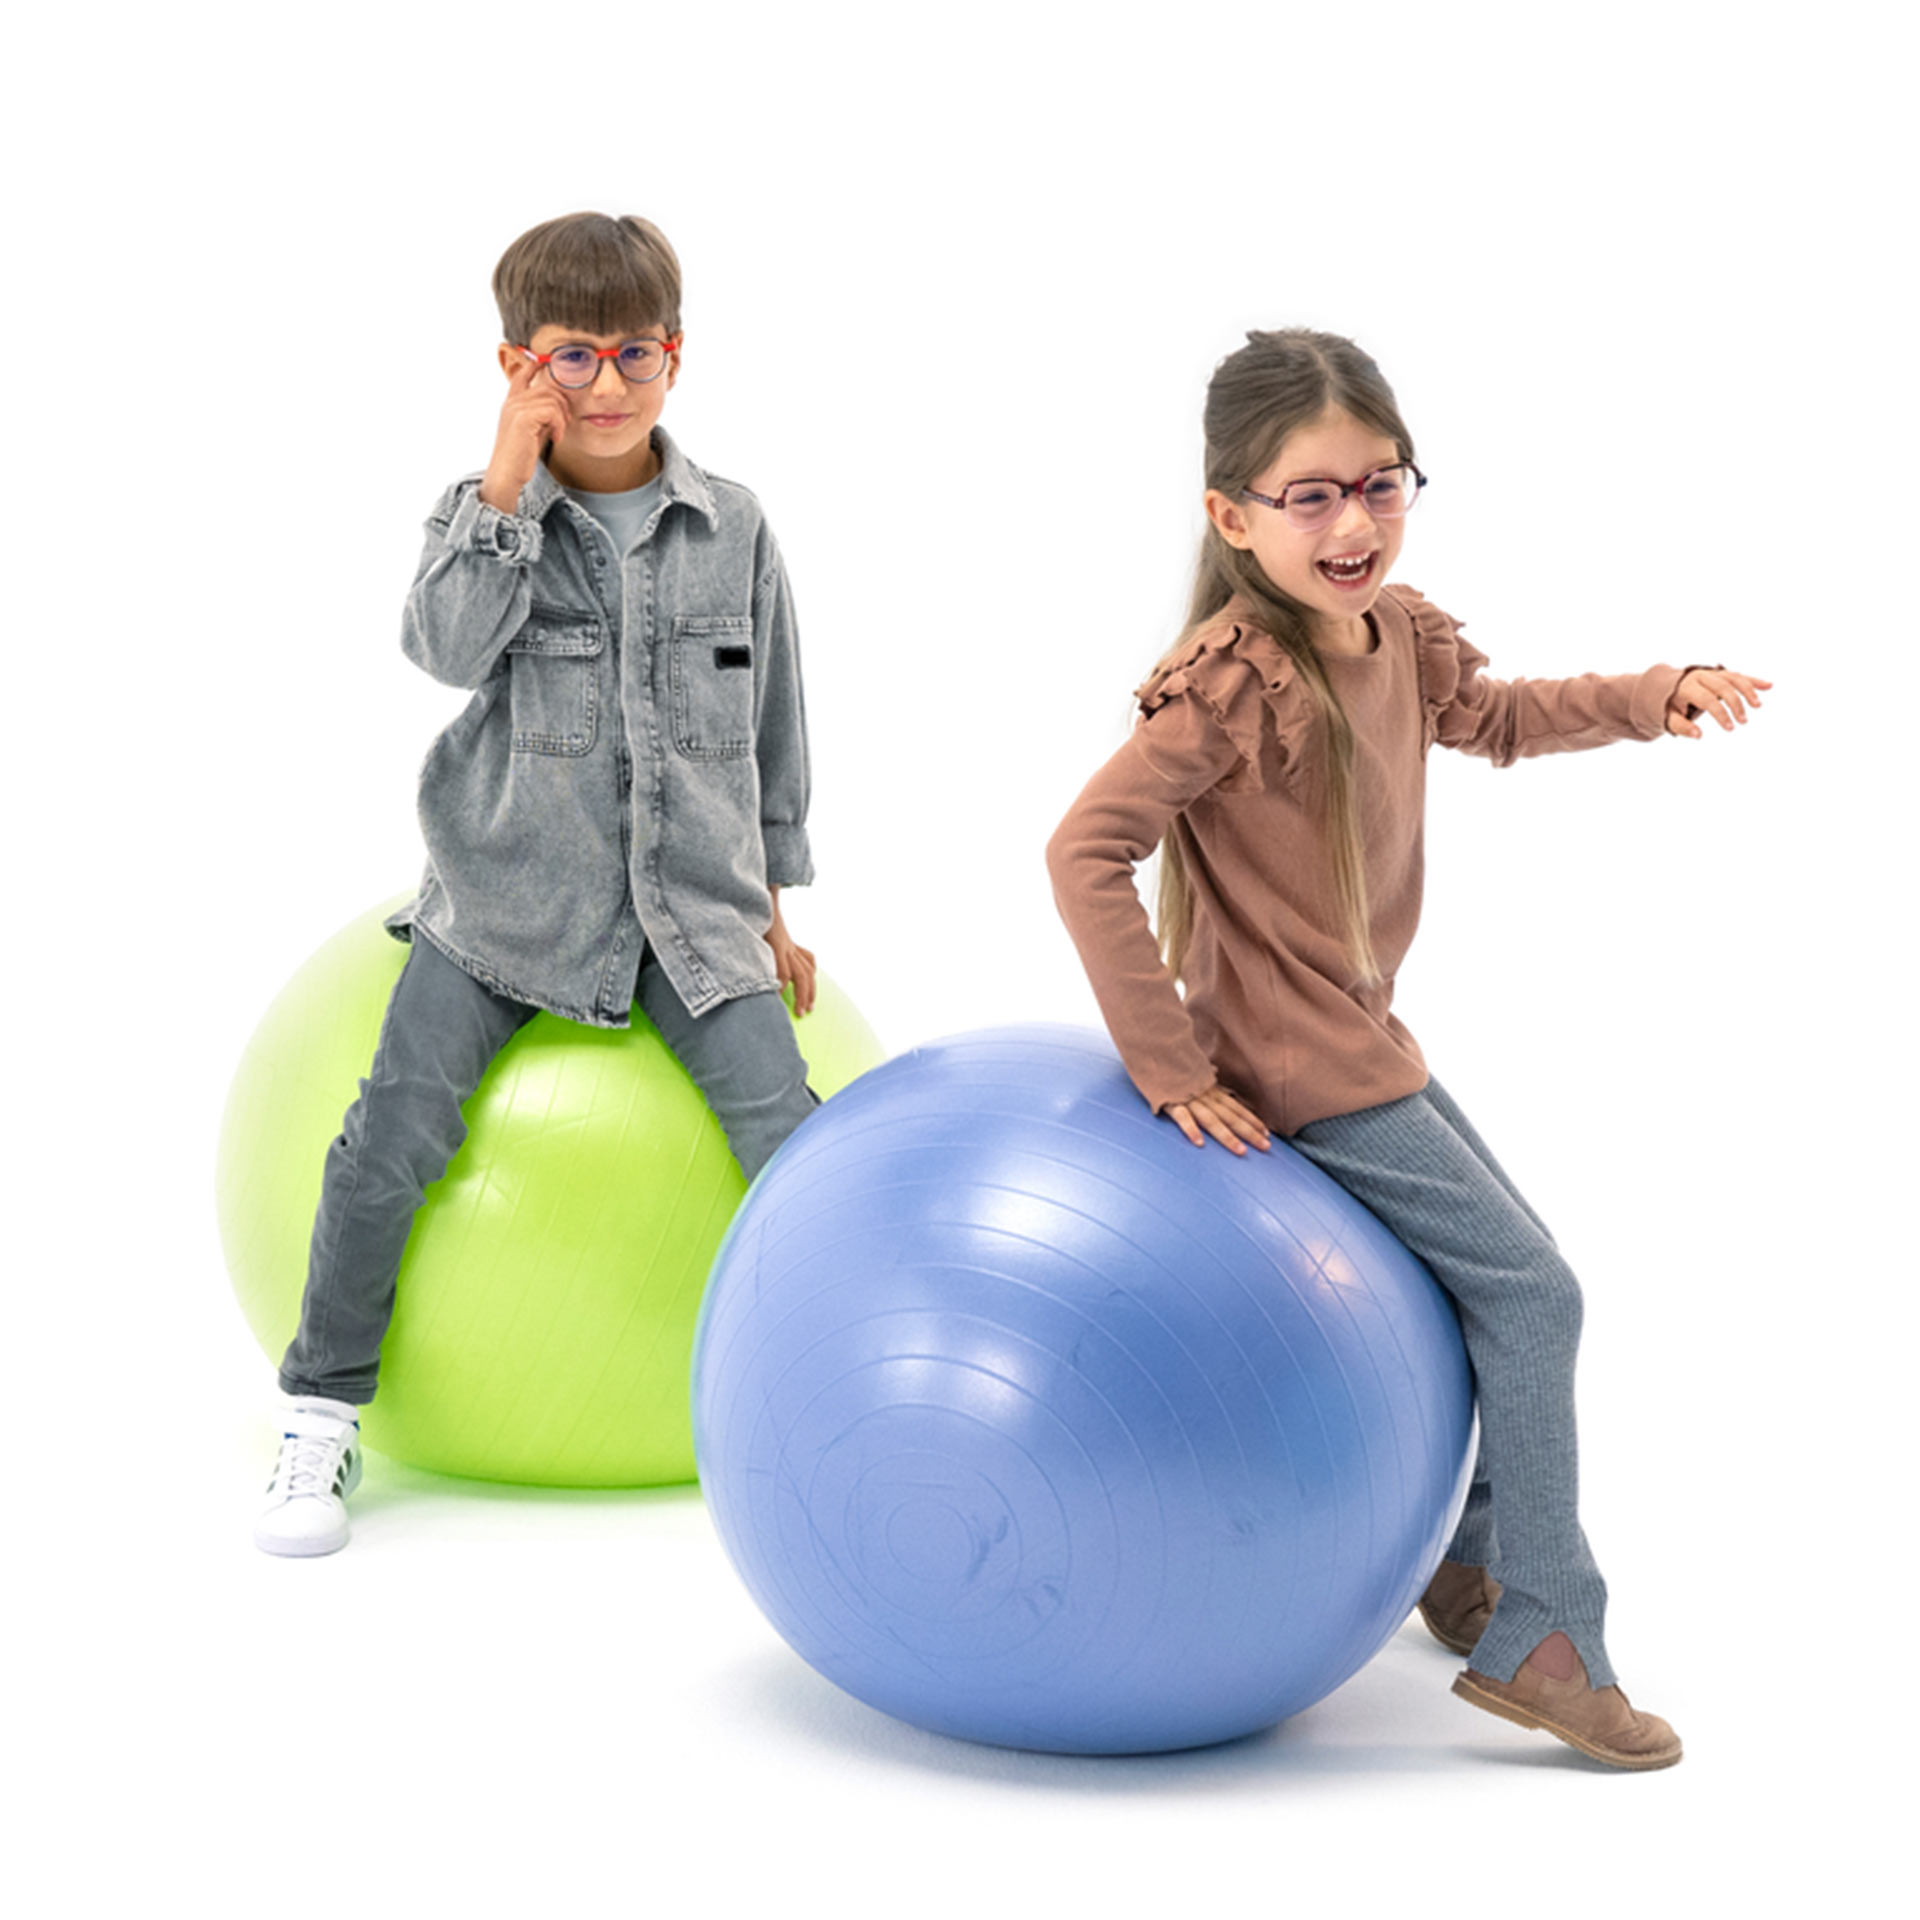 Szemüveget viselő kisfiú és kislány, amint játékosan ugrálnak gimnasztikai labdákon.